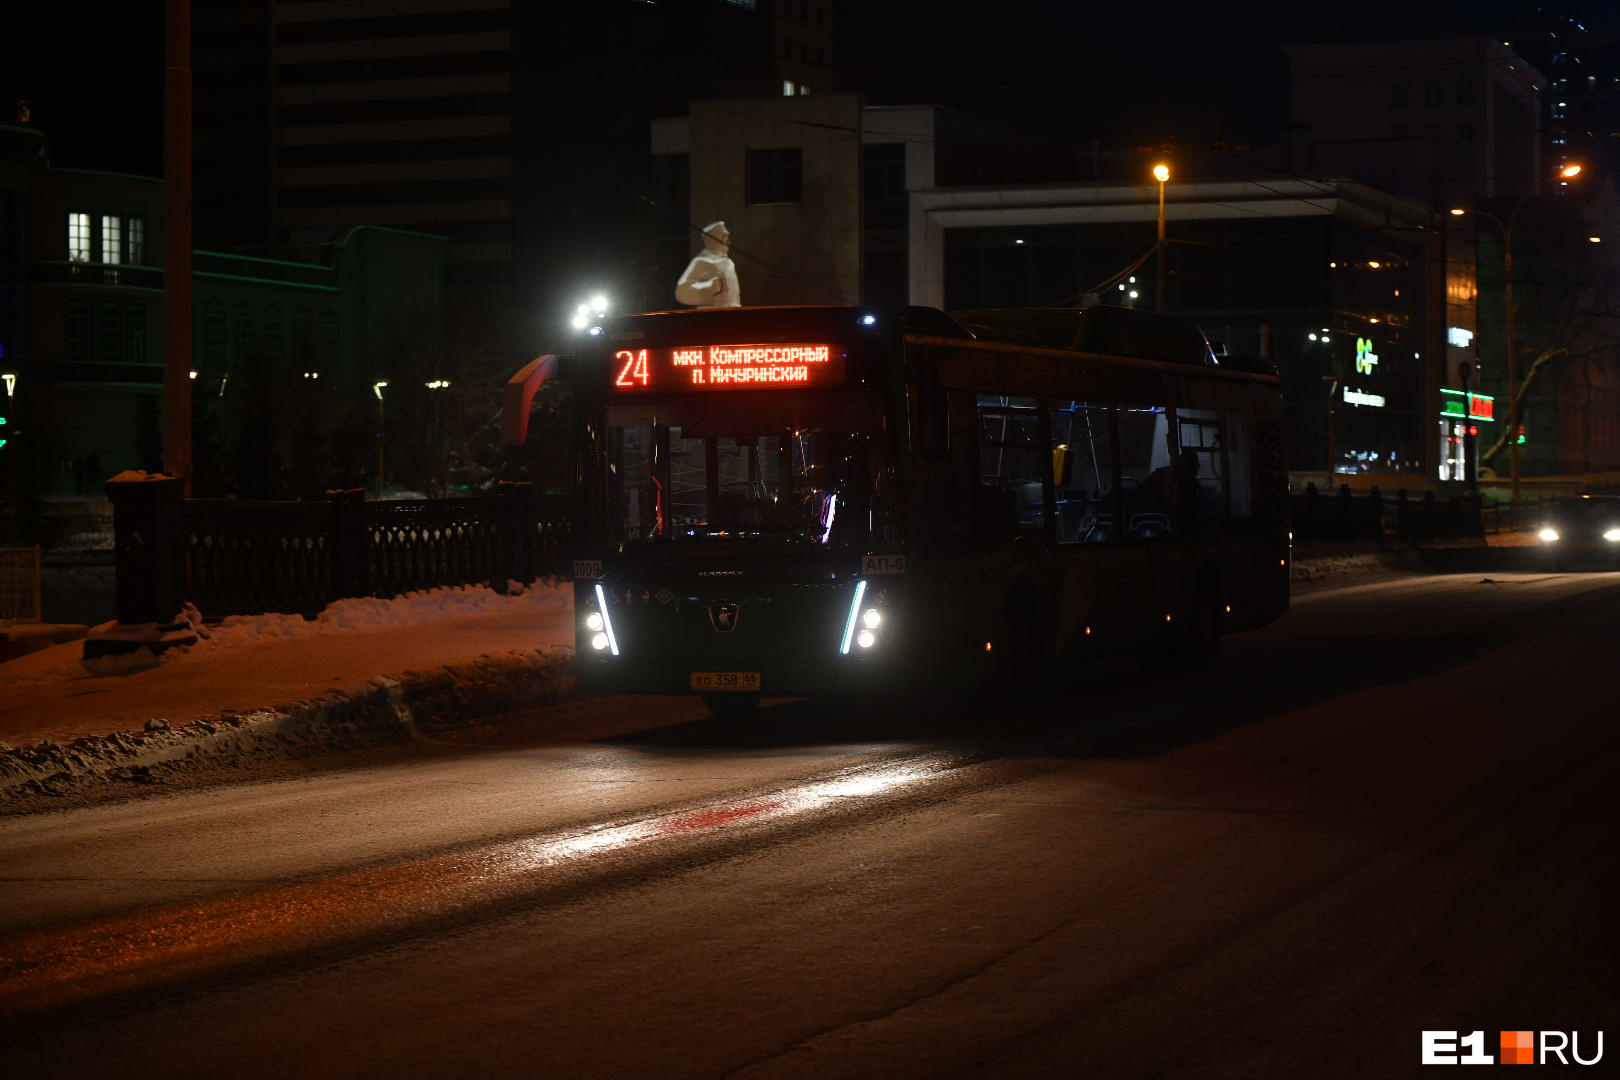 Автобусы и трамваи ходят очень часто. О расписании их работы <a href="https://www.e1.ru/text/transport/2021/12/28/70347677/" class="_" target="_blank">читайте в нашем материале</a>